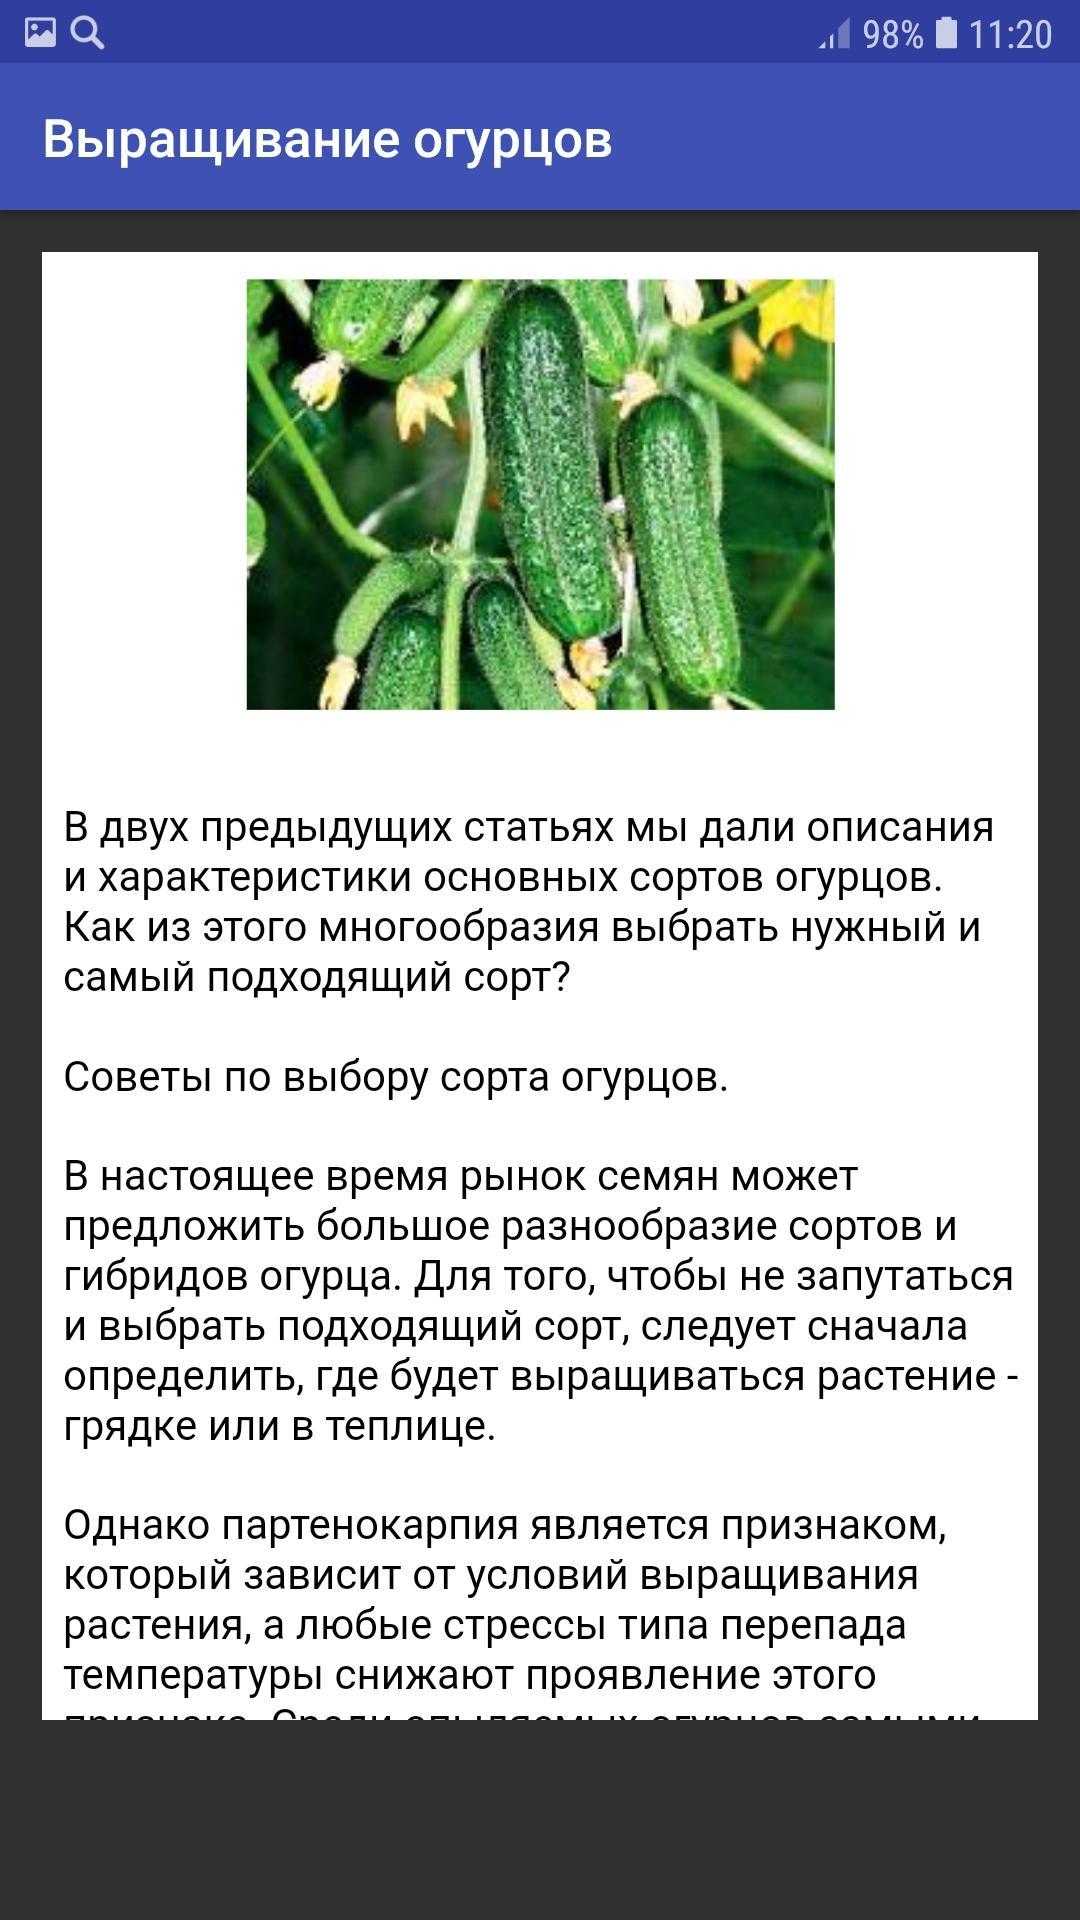 Сорт огурцов мамлюк: описание, агротехника выращивания